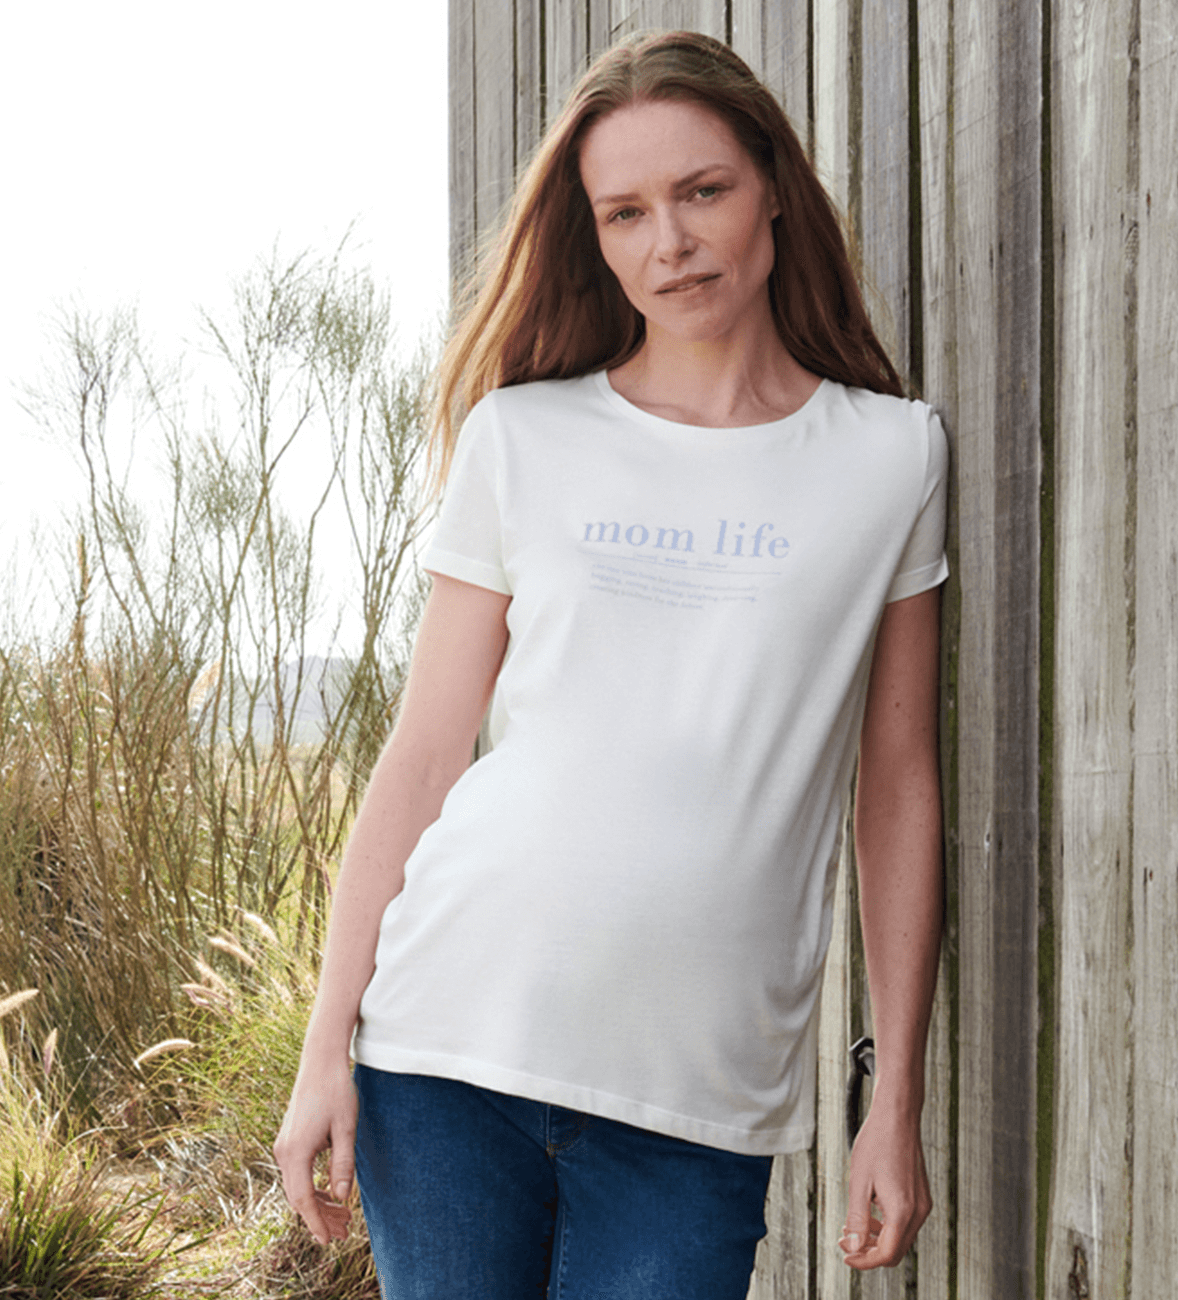 Une femme enceinte dans son 3e trimestre porte un jean de grossesse et un t-shirt décontracté.